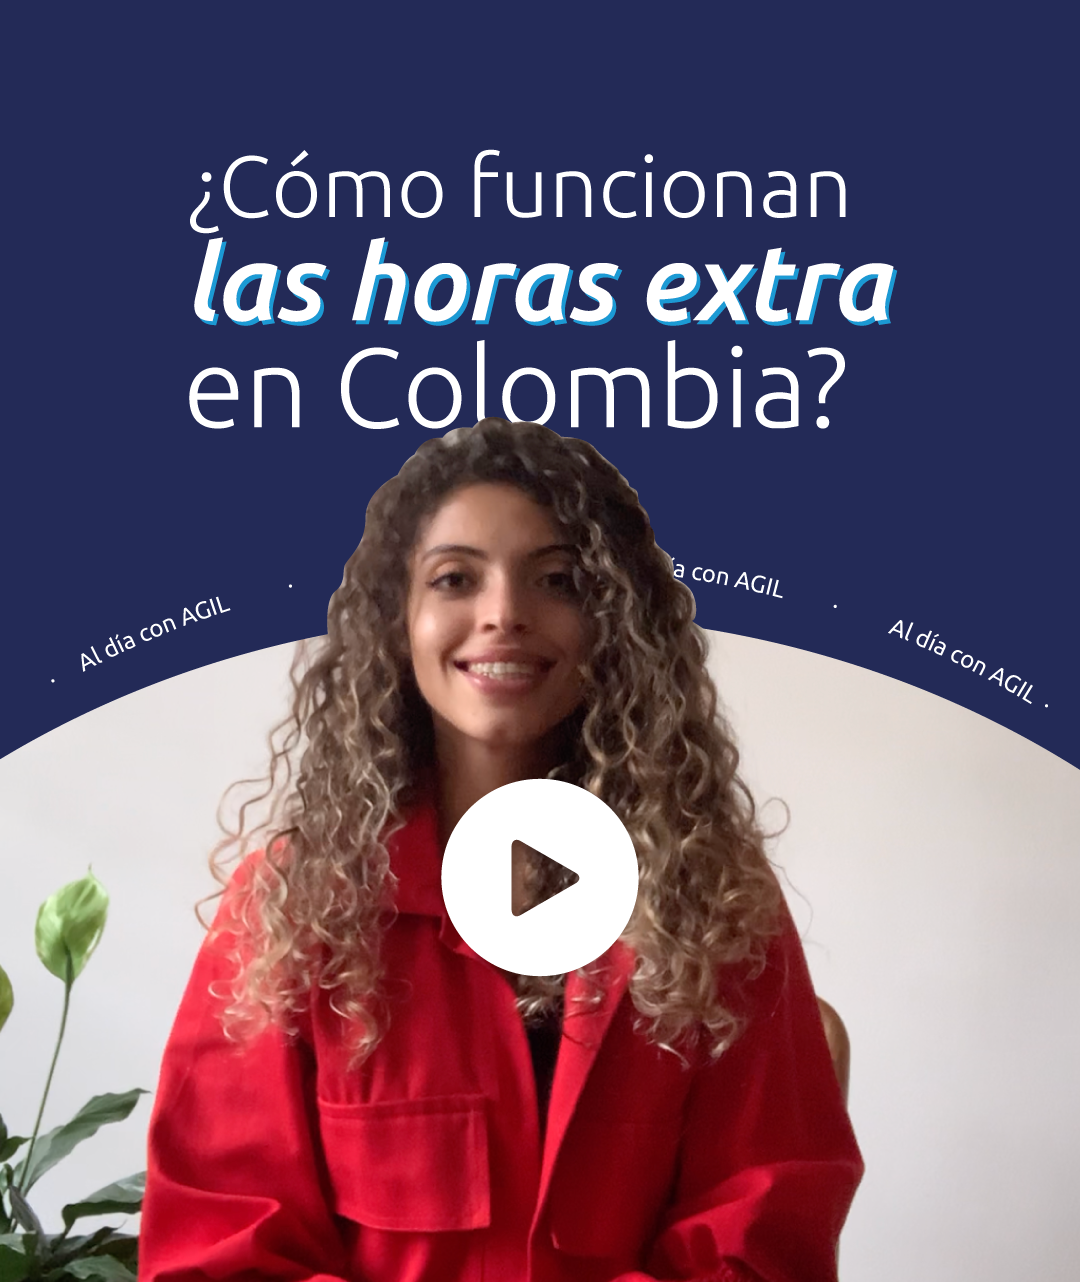 👀Mira el video sobre cómo funcionan las horas extra en Colombia